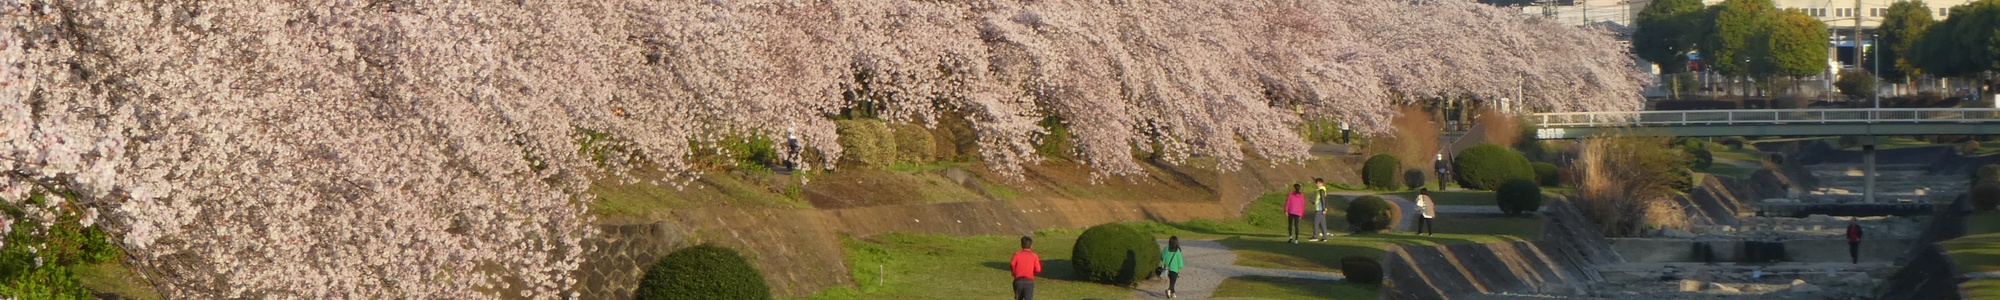 秦野の桜-カルチャーパーク前の桜並木